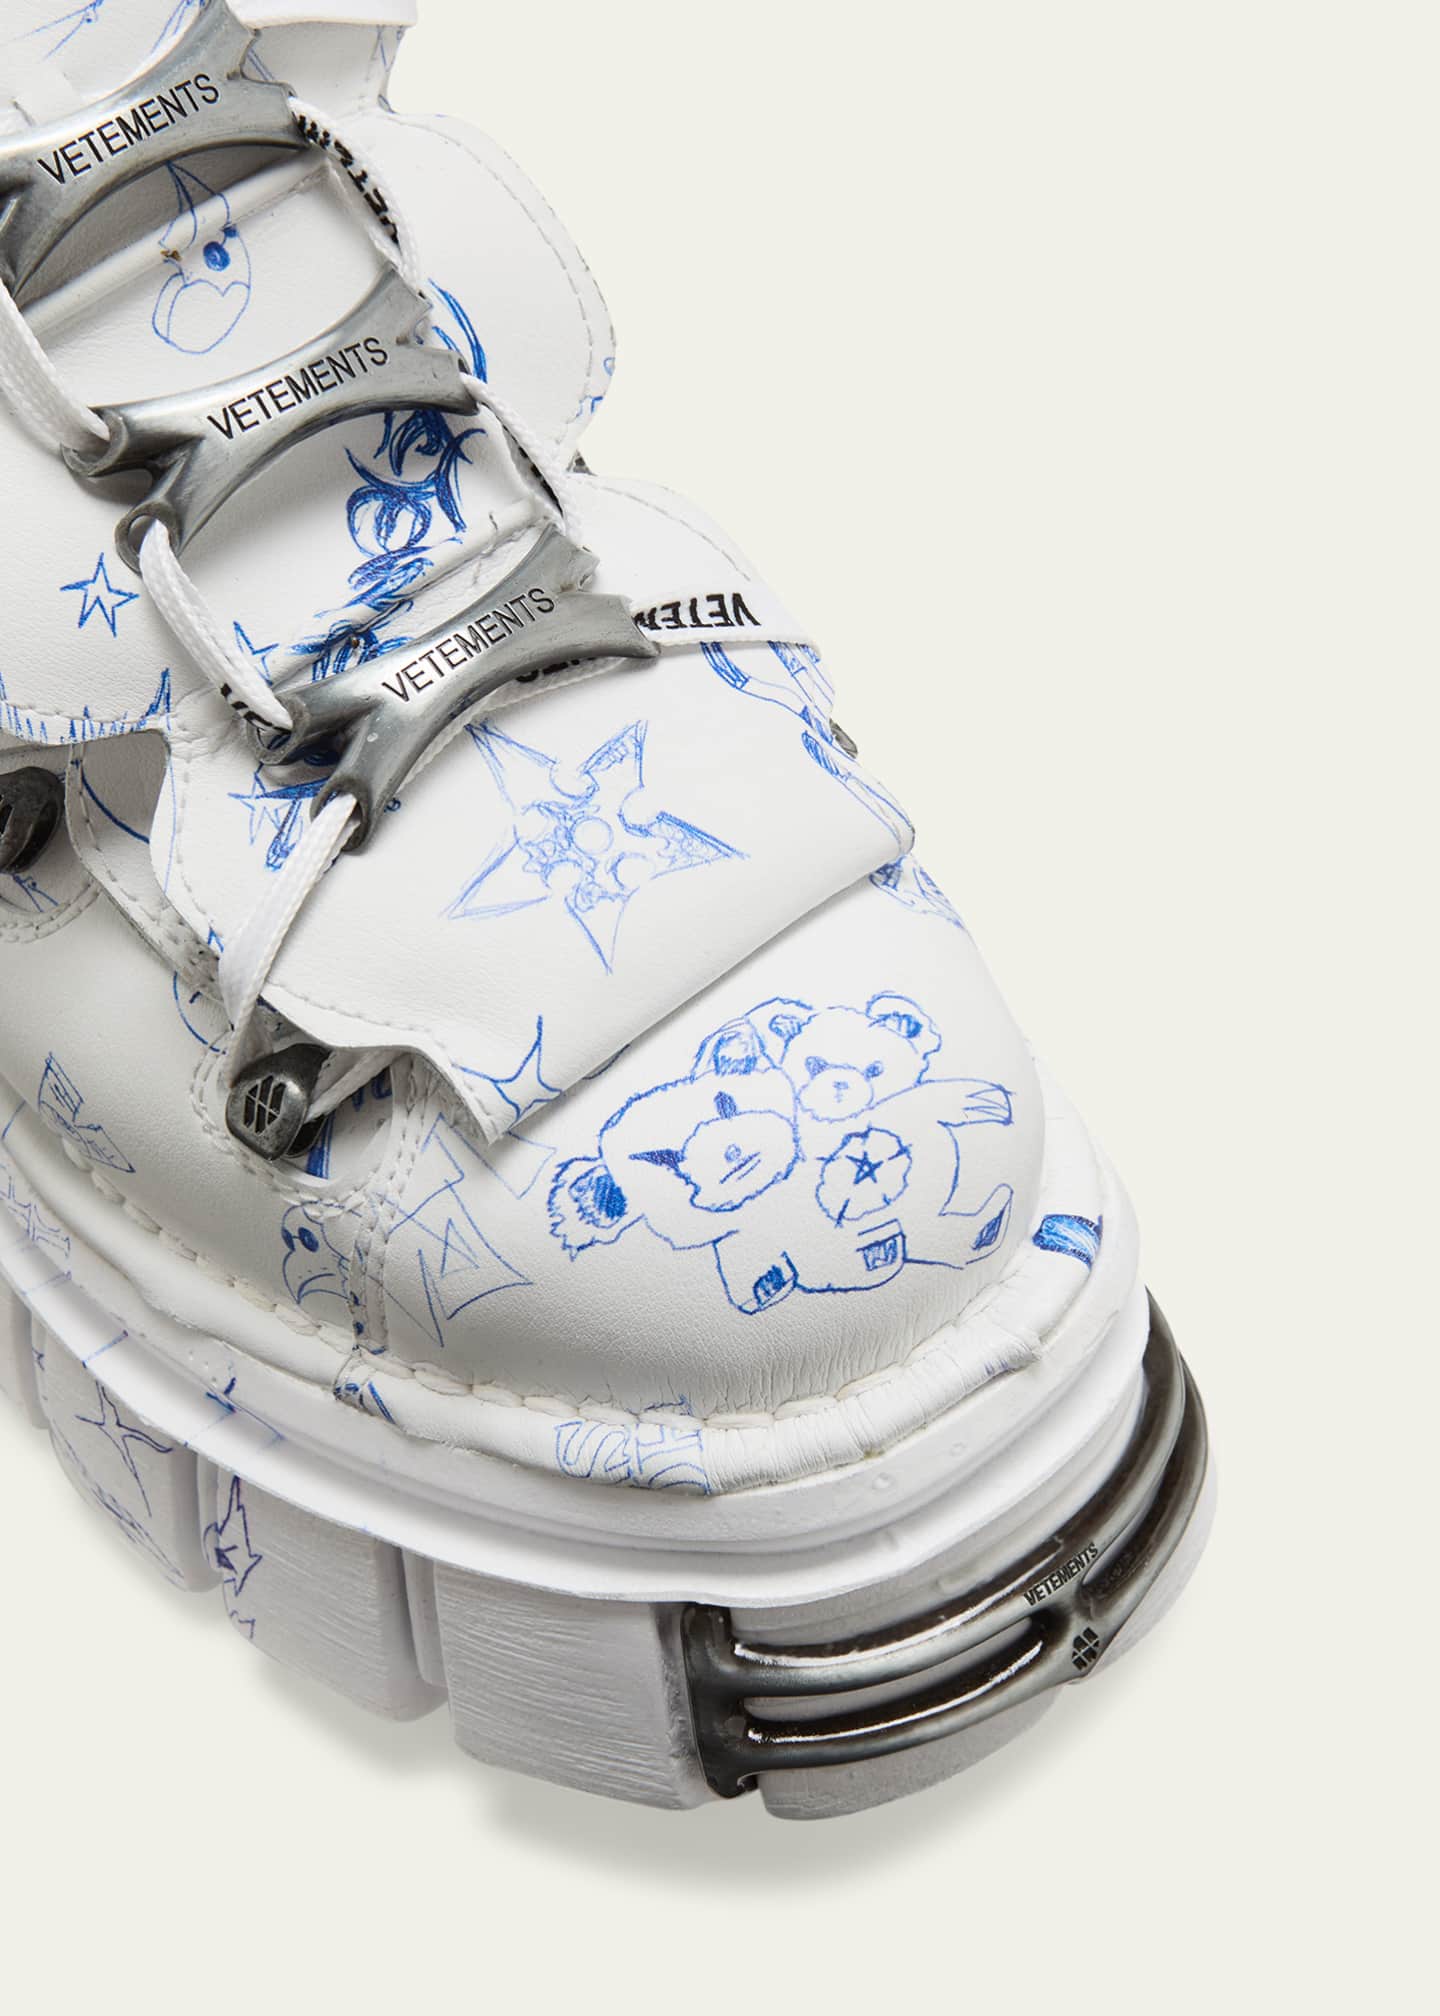 Vetements x New Rock Men's Scribble Platform Sneakers - Bergdorf Goodman